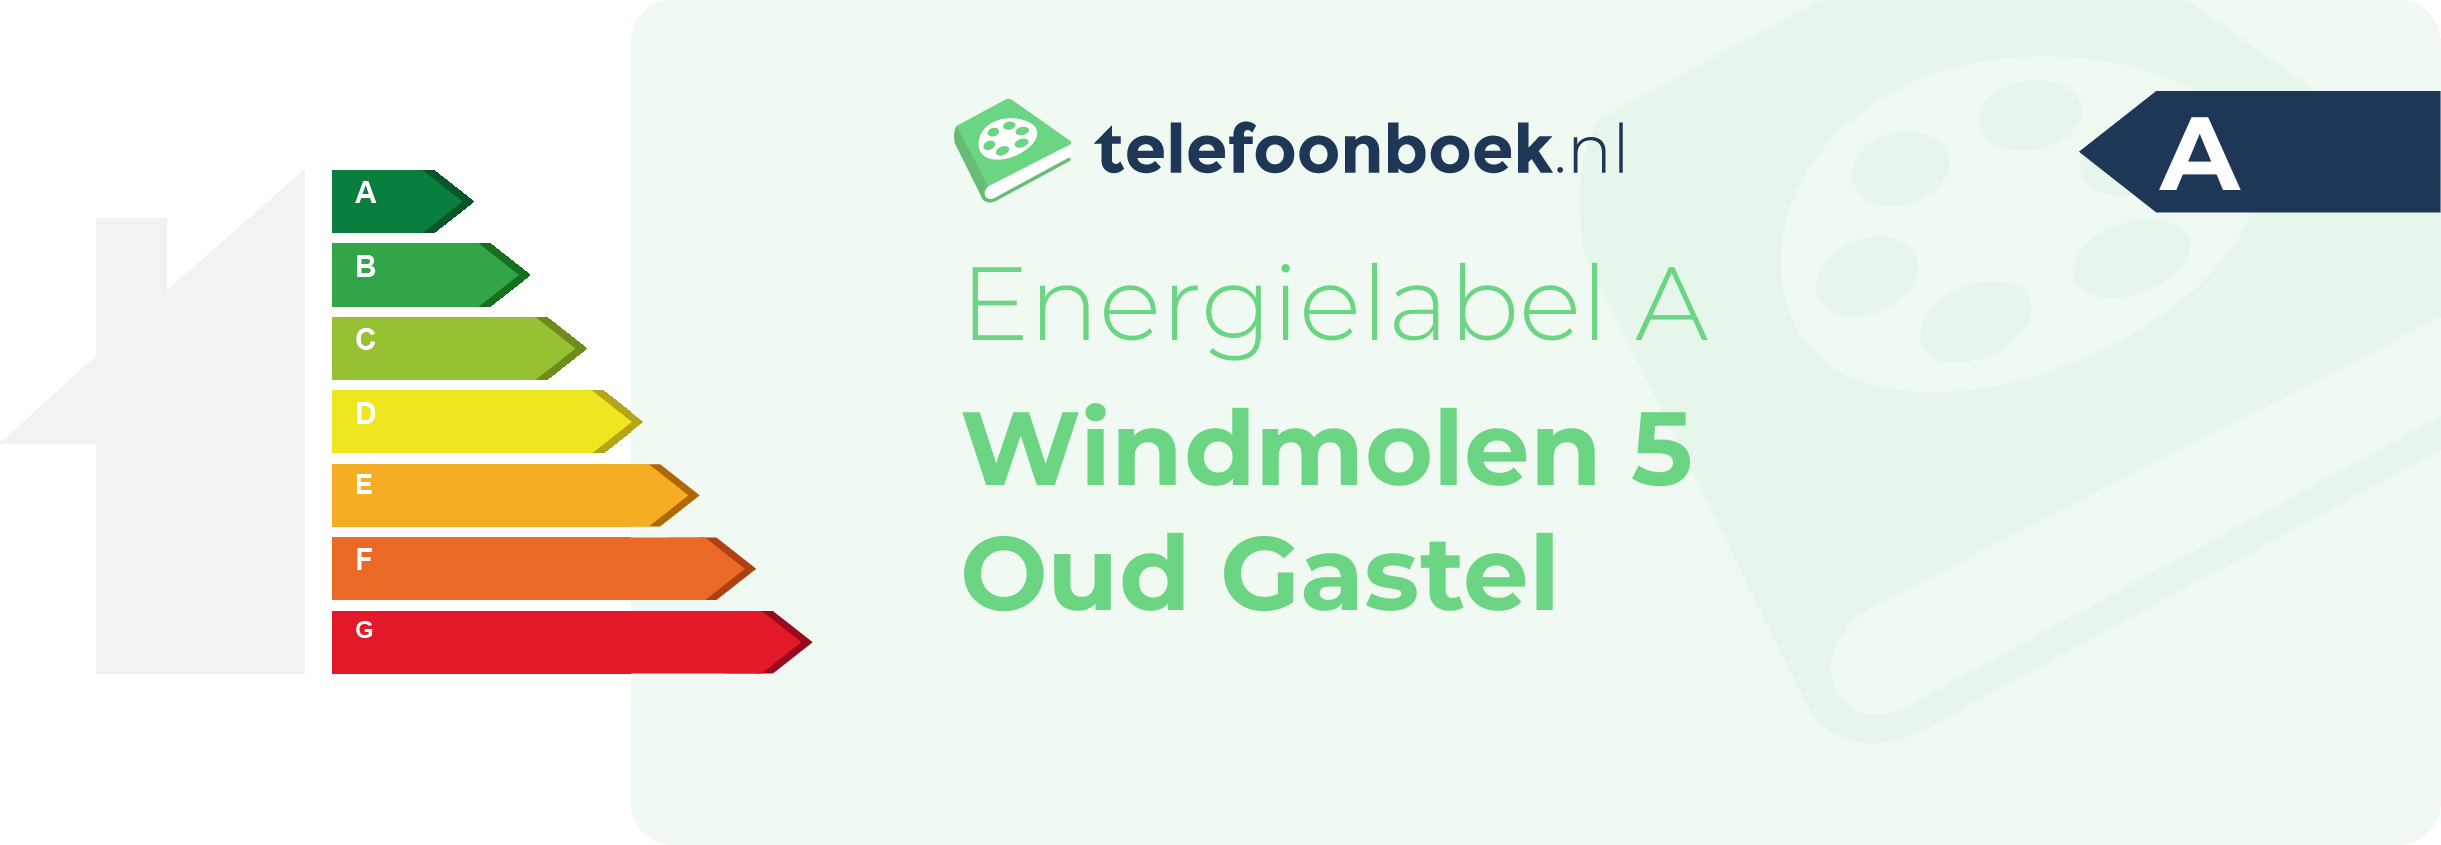 Energielabel Windmolen 5 Oud Gastel